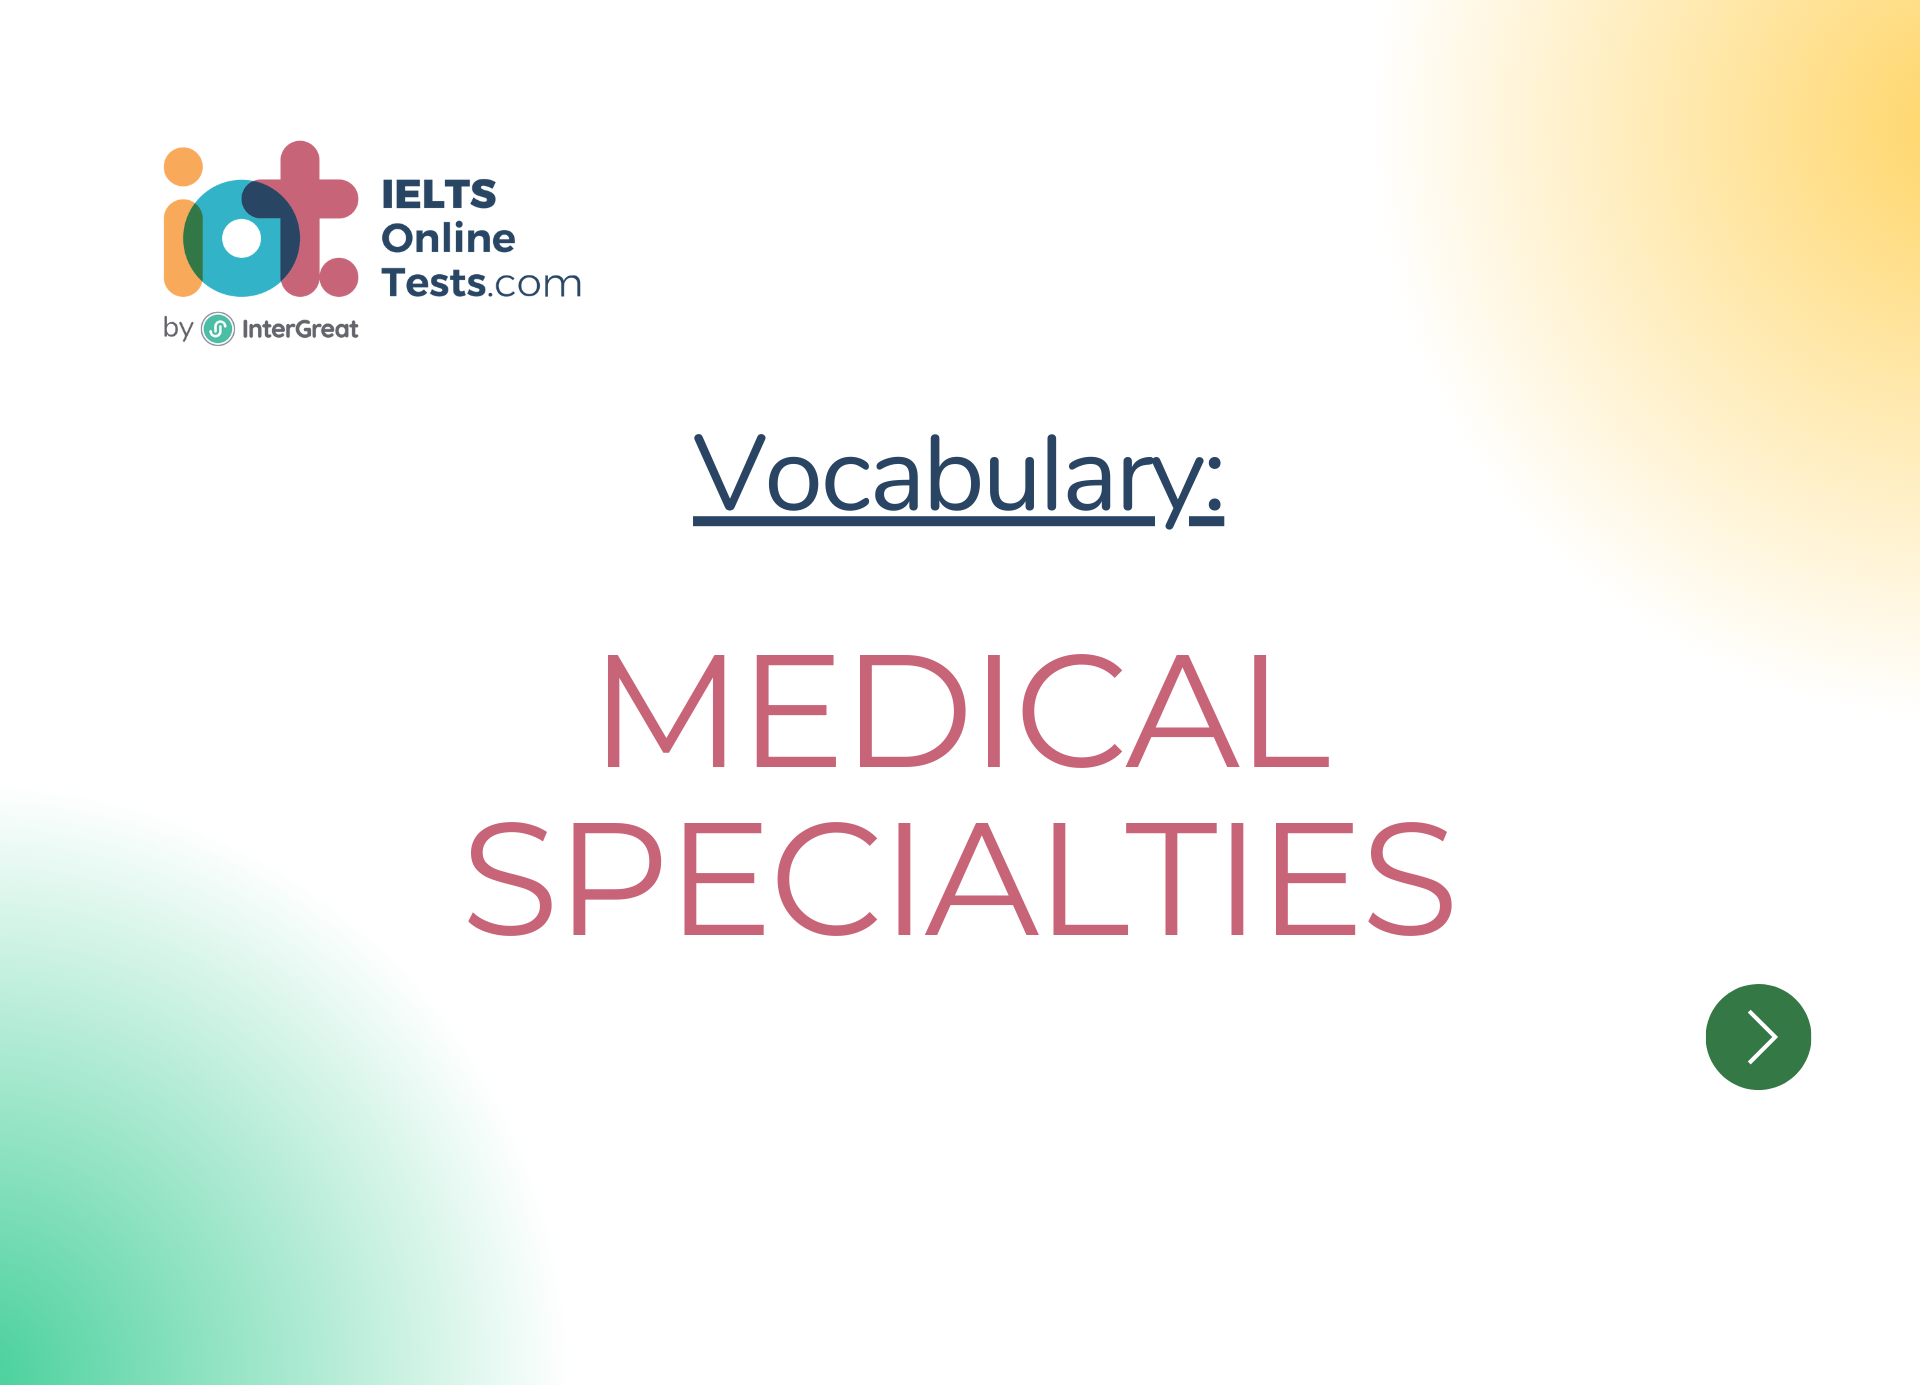 Medical specialties